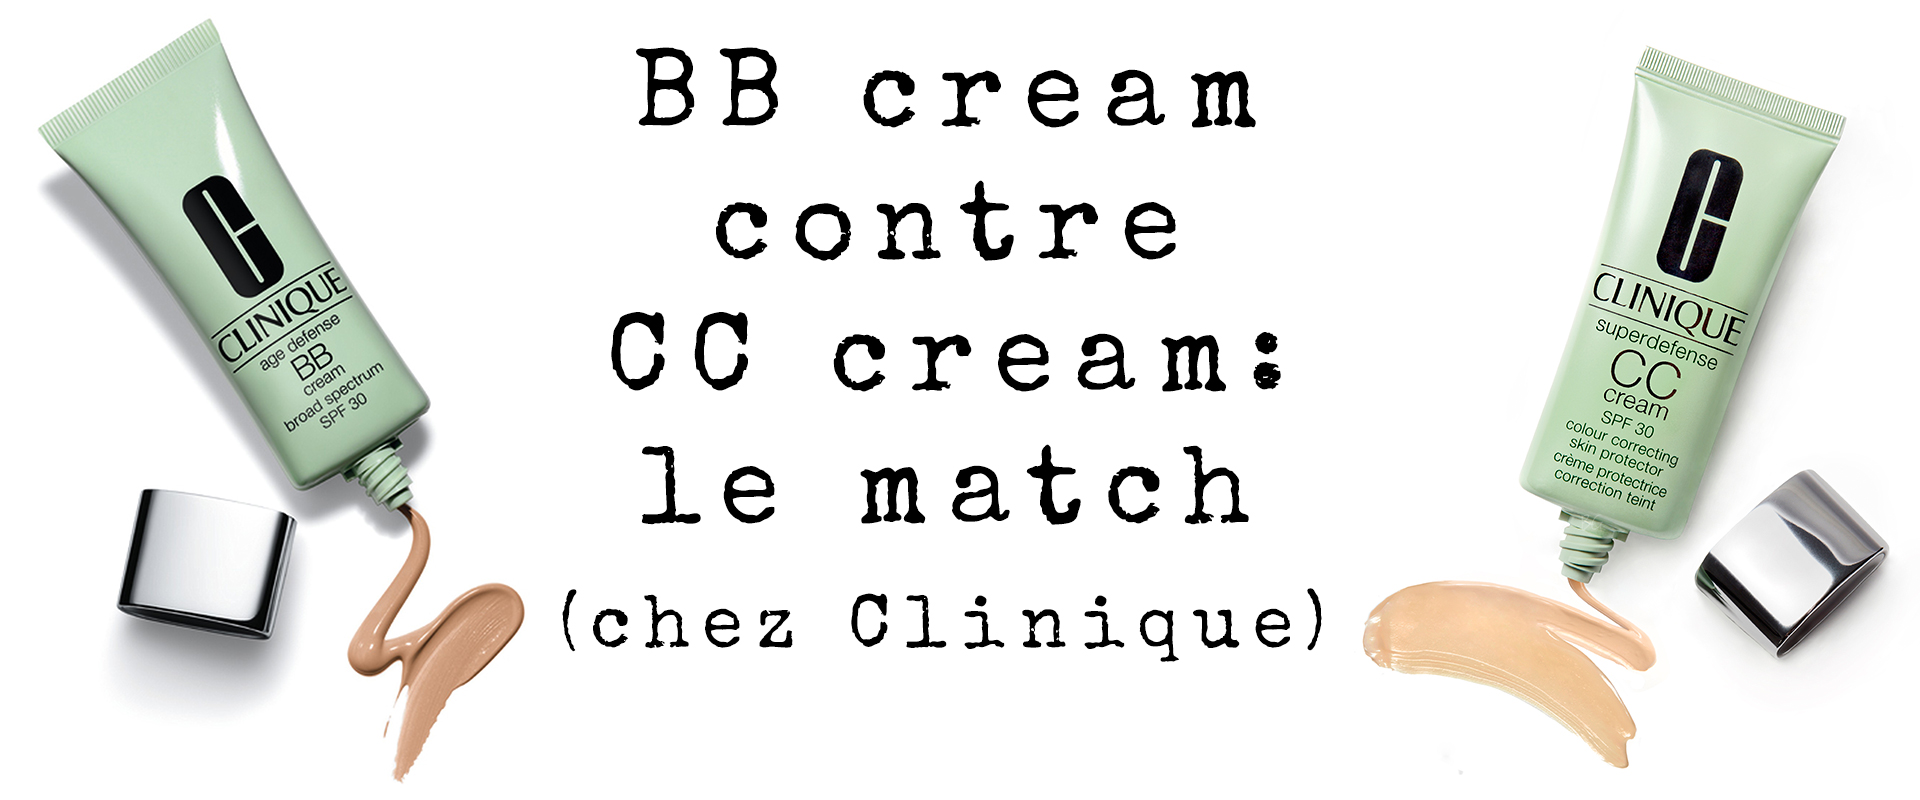 BB cream contre CC cream: le match (chez Clinique)